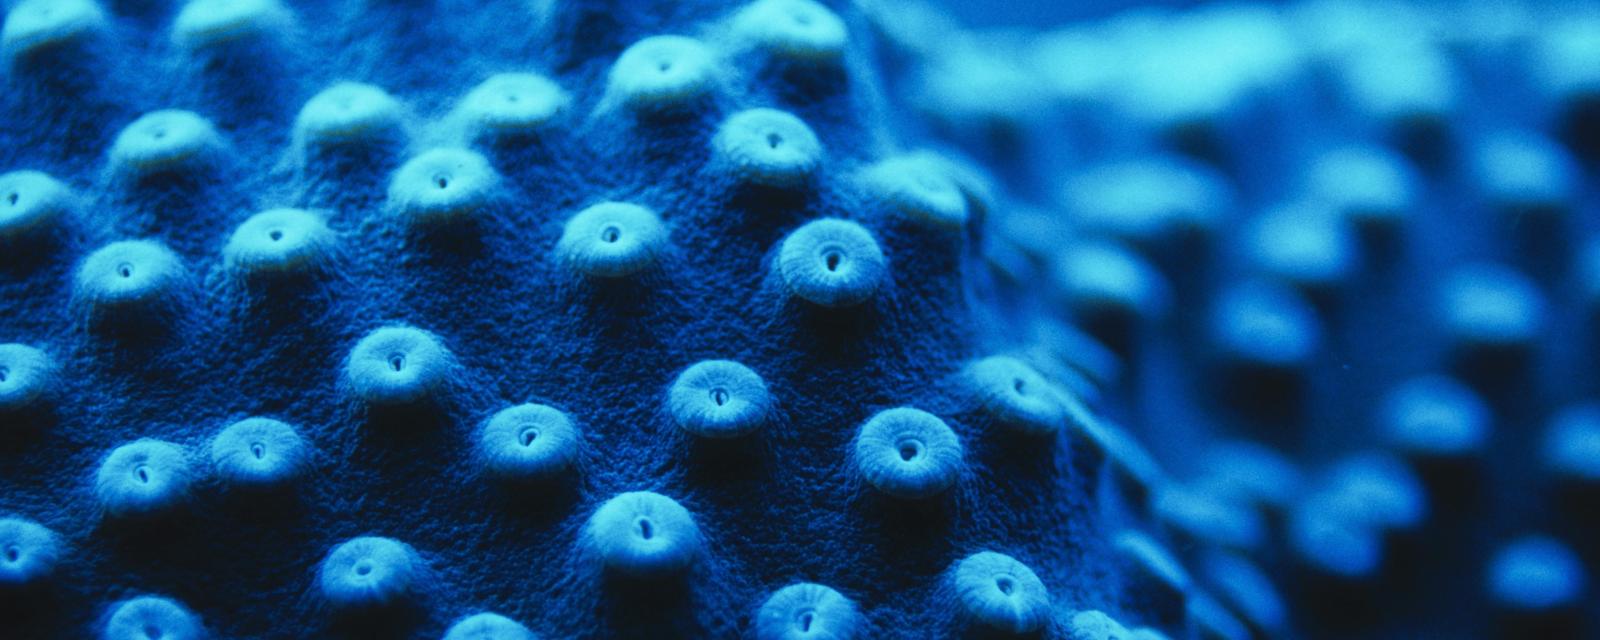 Cup coral polyps